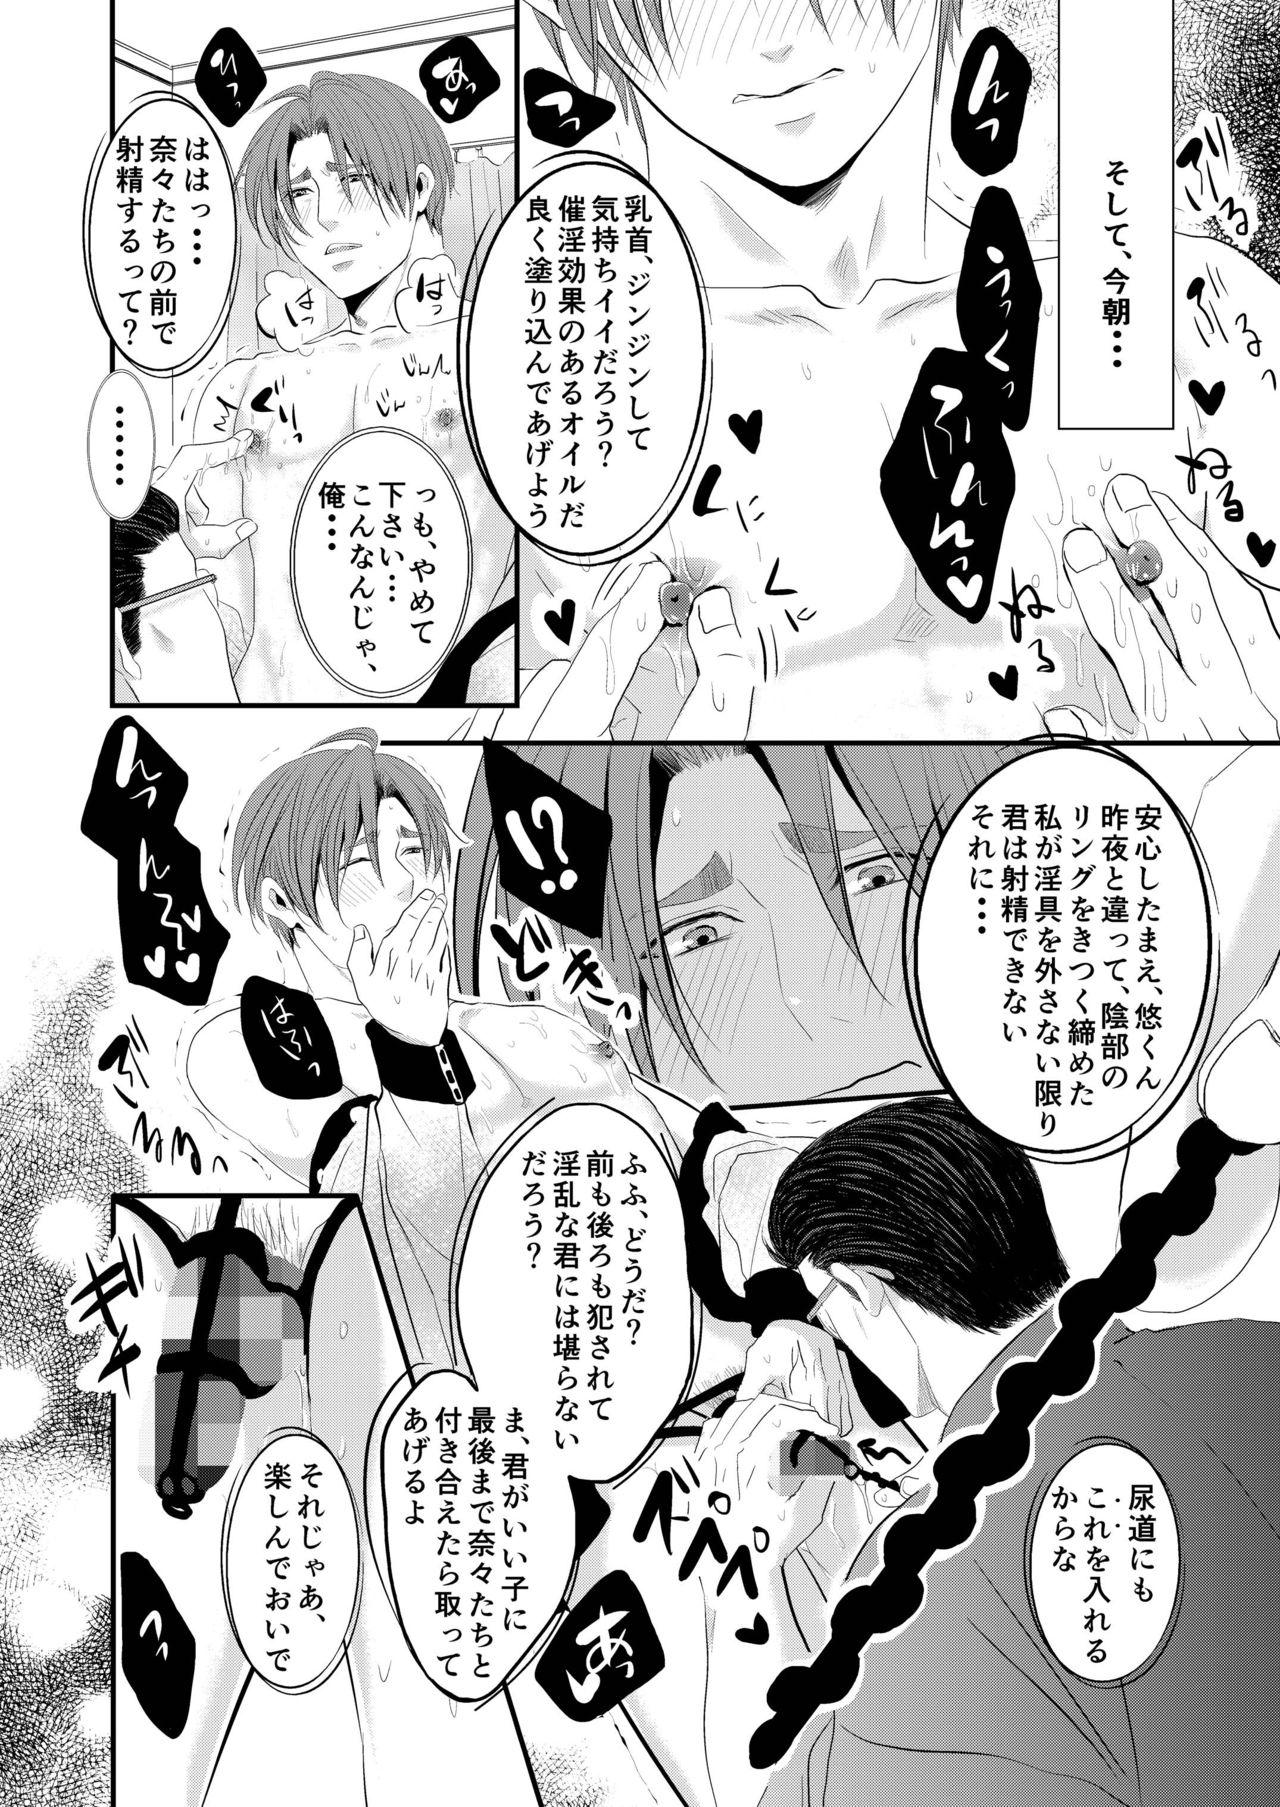 Ink Kono ai wa Yamai ni Nite iru 3 Sapphicerotica - Page 7